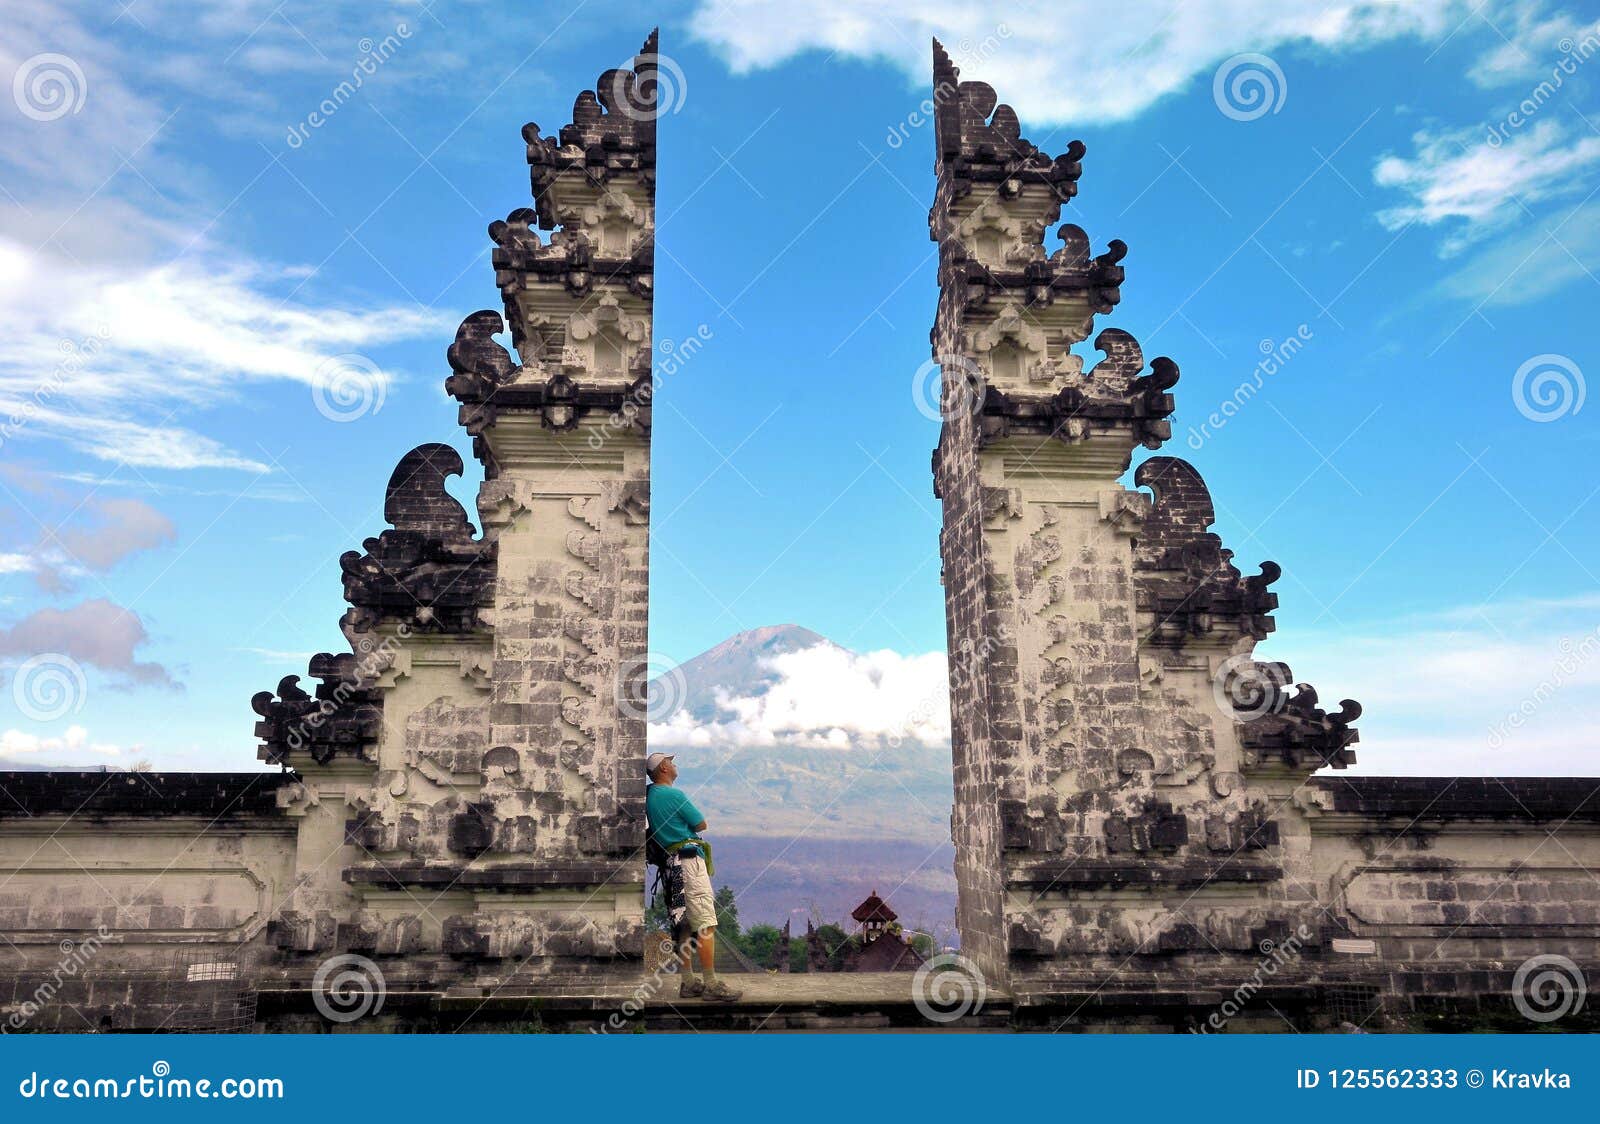  Pura  Luhur  Lempuyang  Temple  Bali Indonesia Stock Image 